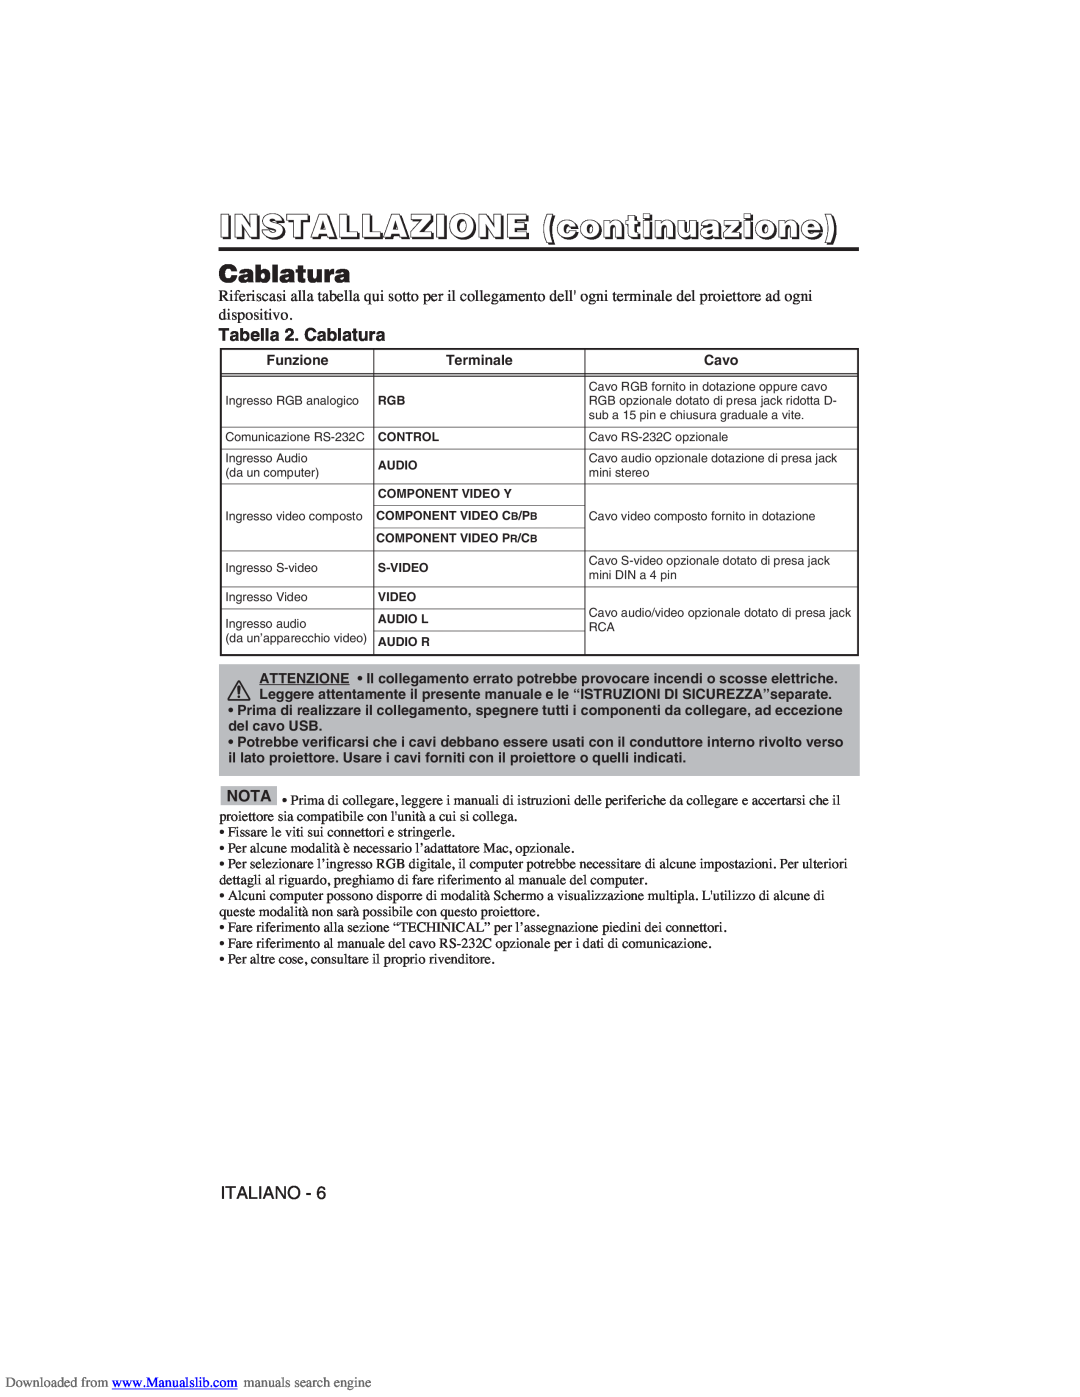 Hitachi CP-X275W user manual INSTALLAZIONE continuazione, Tabella 2. Cablatura 